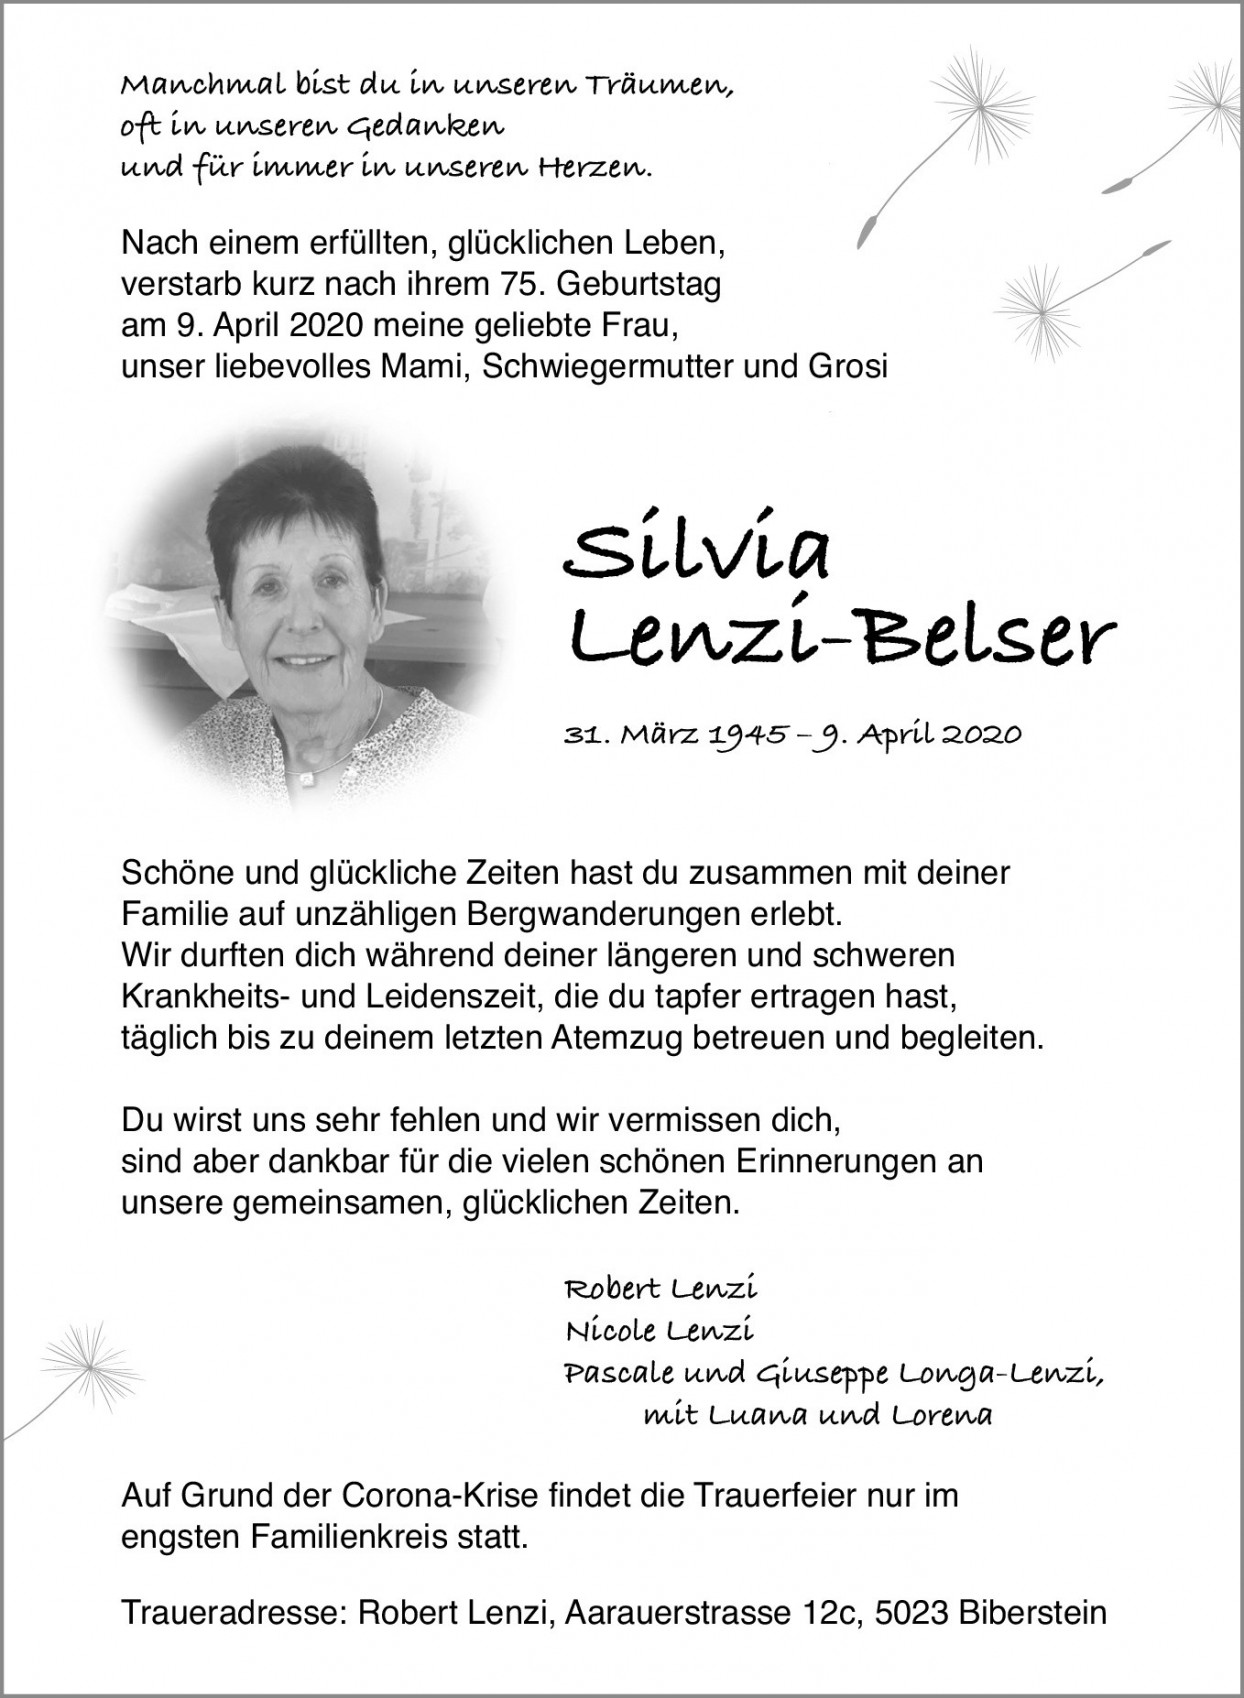 Silvia Lenzi-Belser